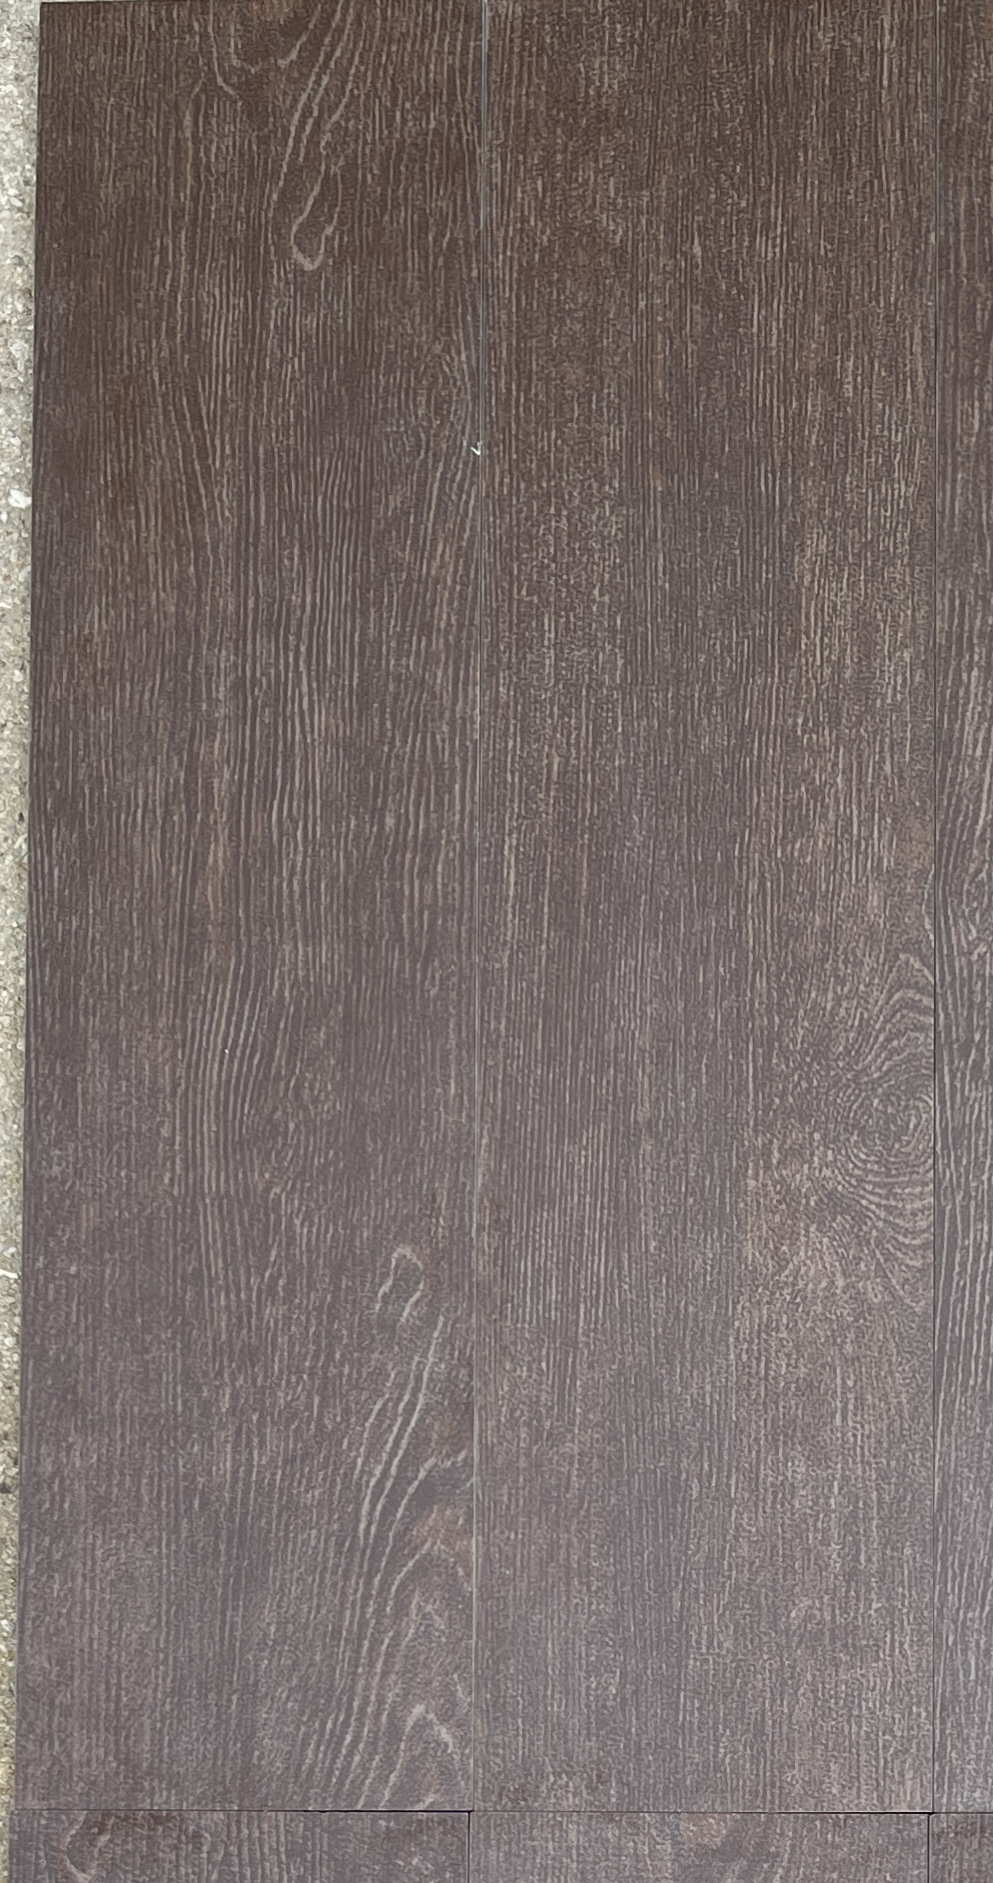 Woodtouch Mahogany 6x24 Closeup